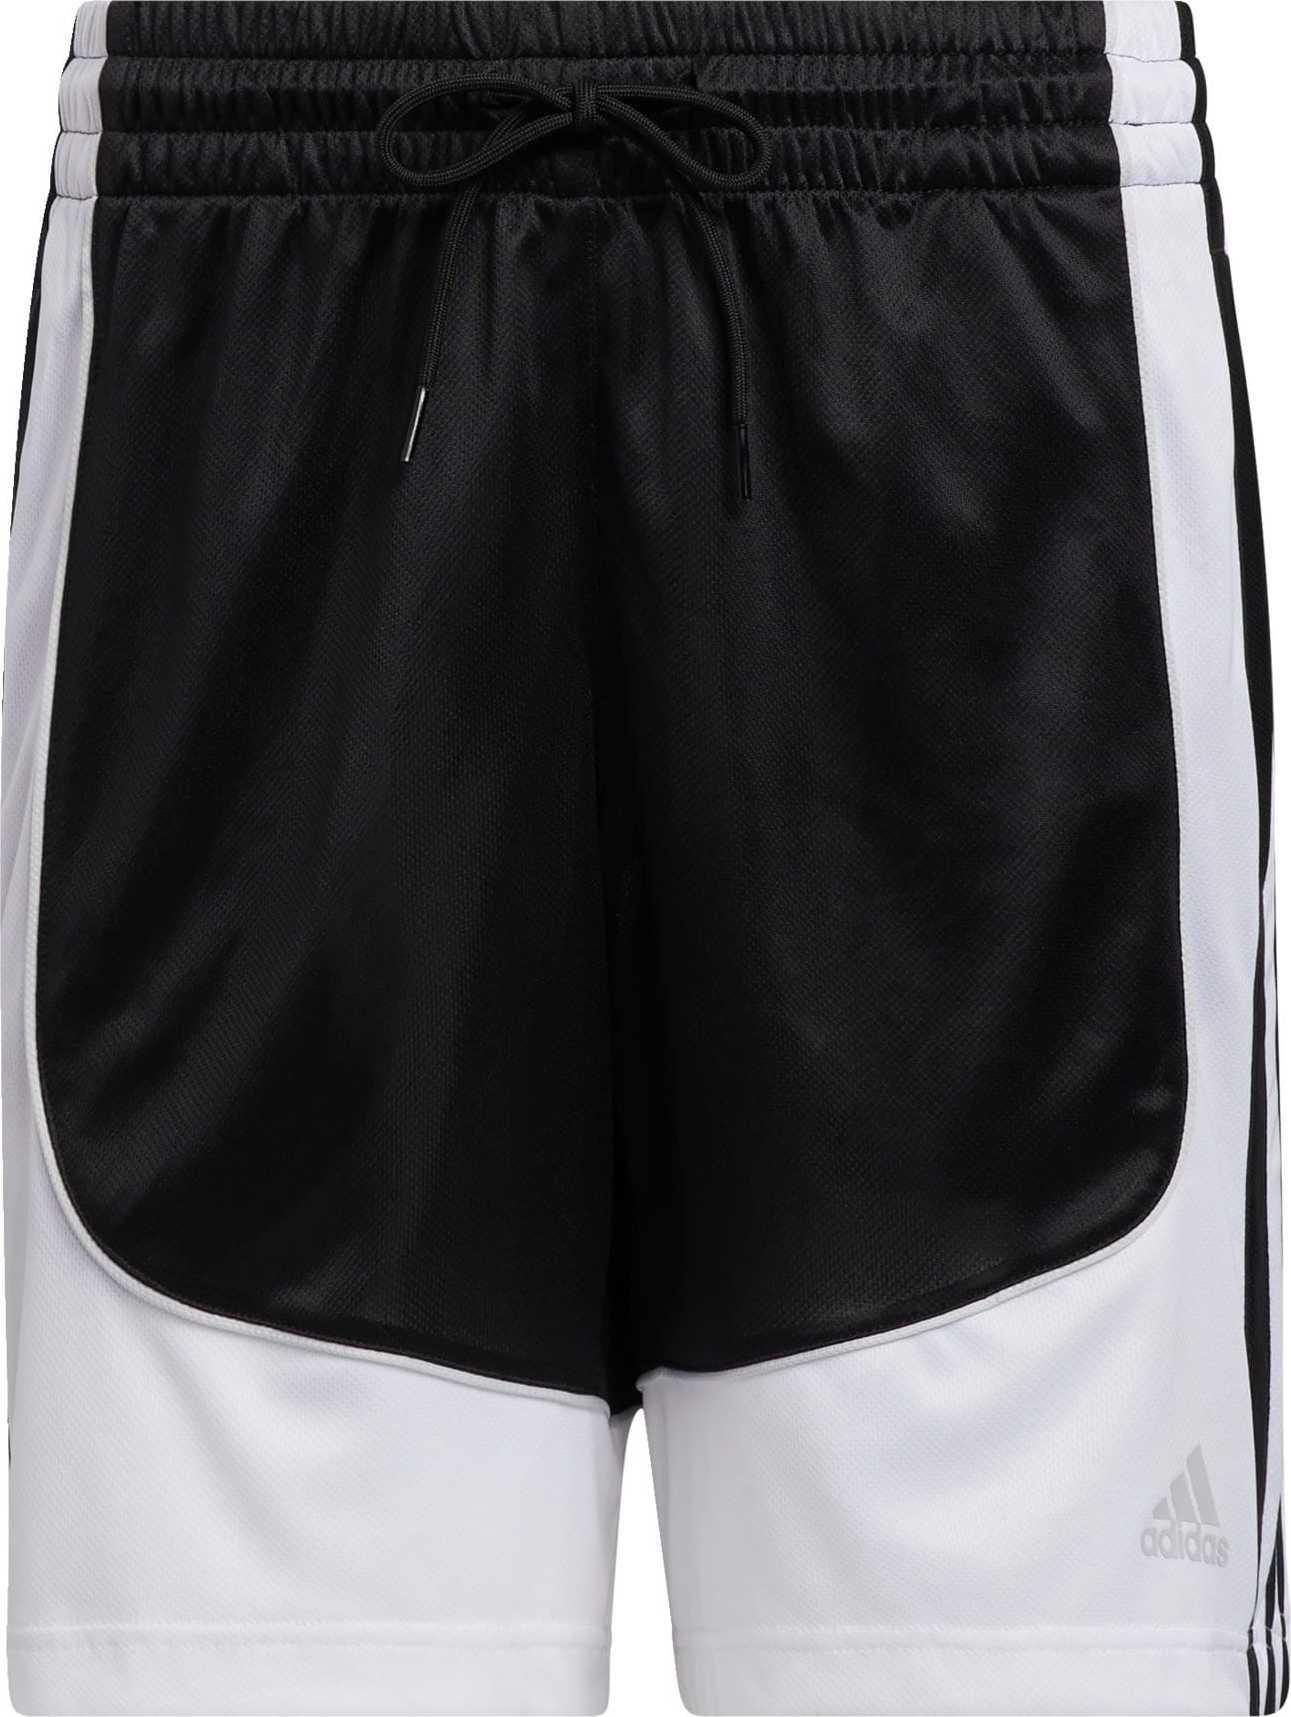 ADIDAS PERFORMANCE Sportovní kalhoty černá / bílá